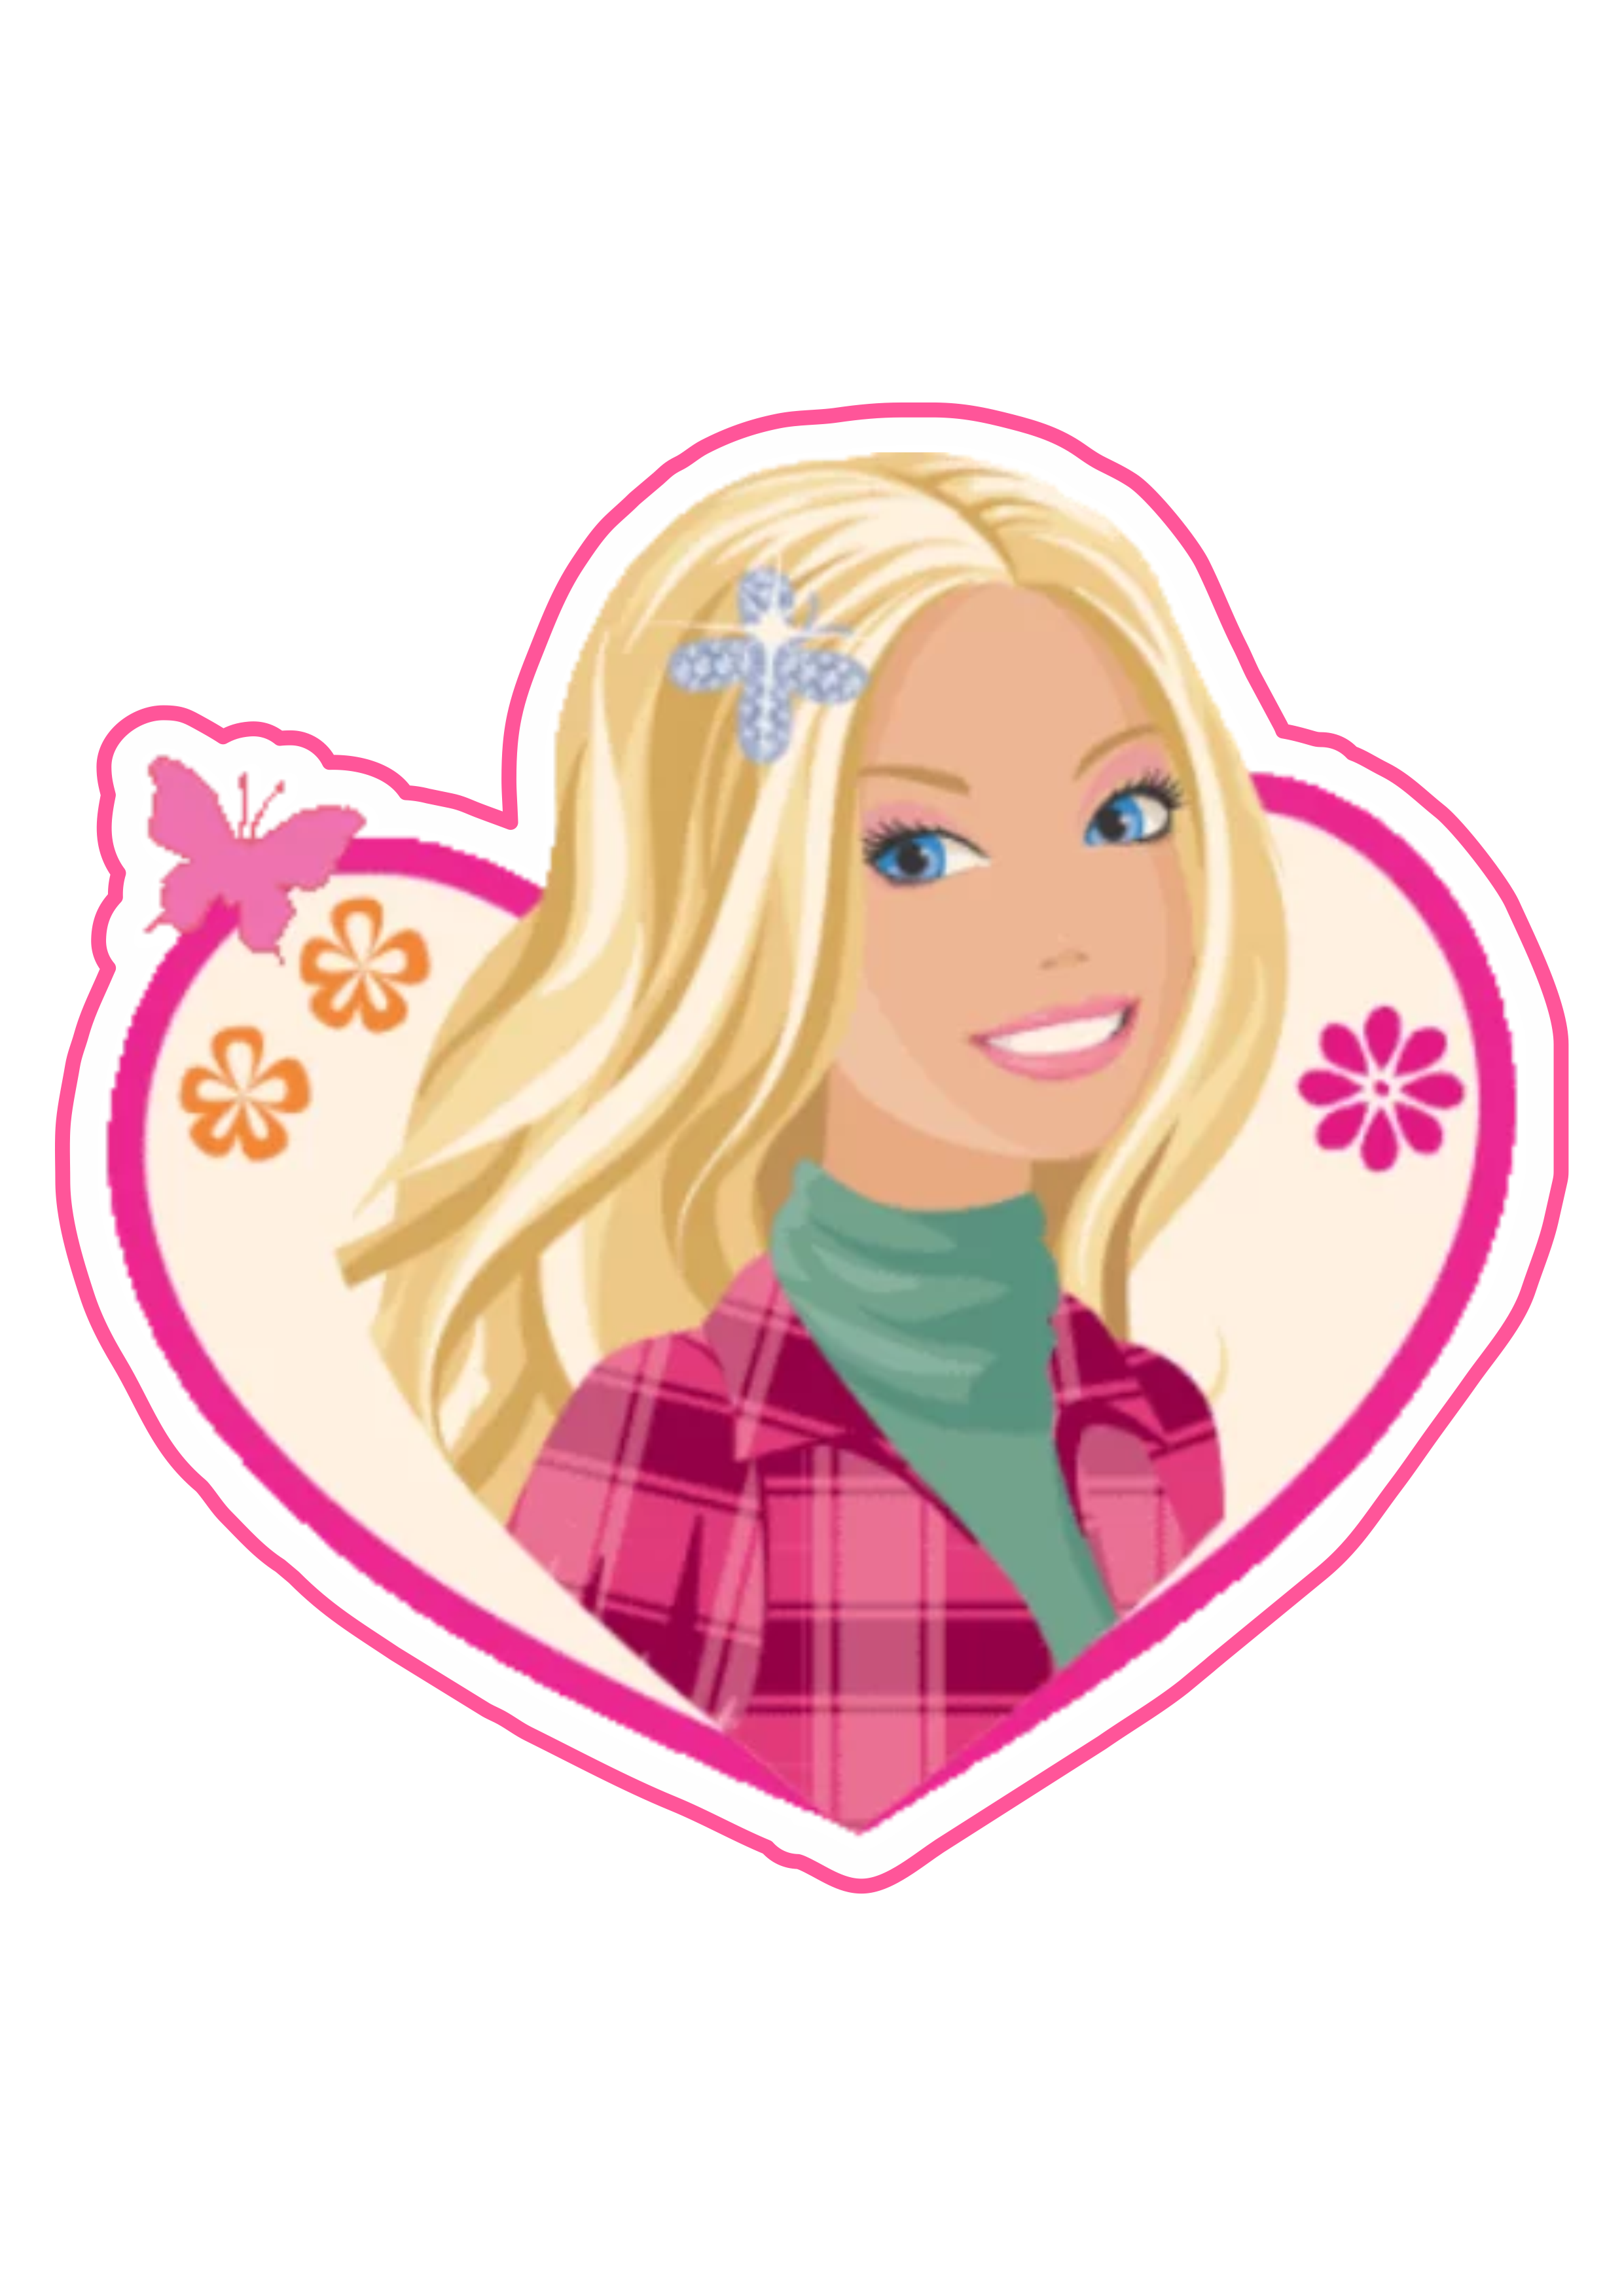 Barbie coraçãozinho bonitinho estilo logomarca para decoração e criação de adesivos personalizados png